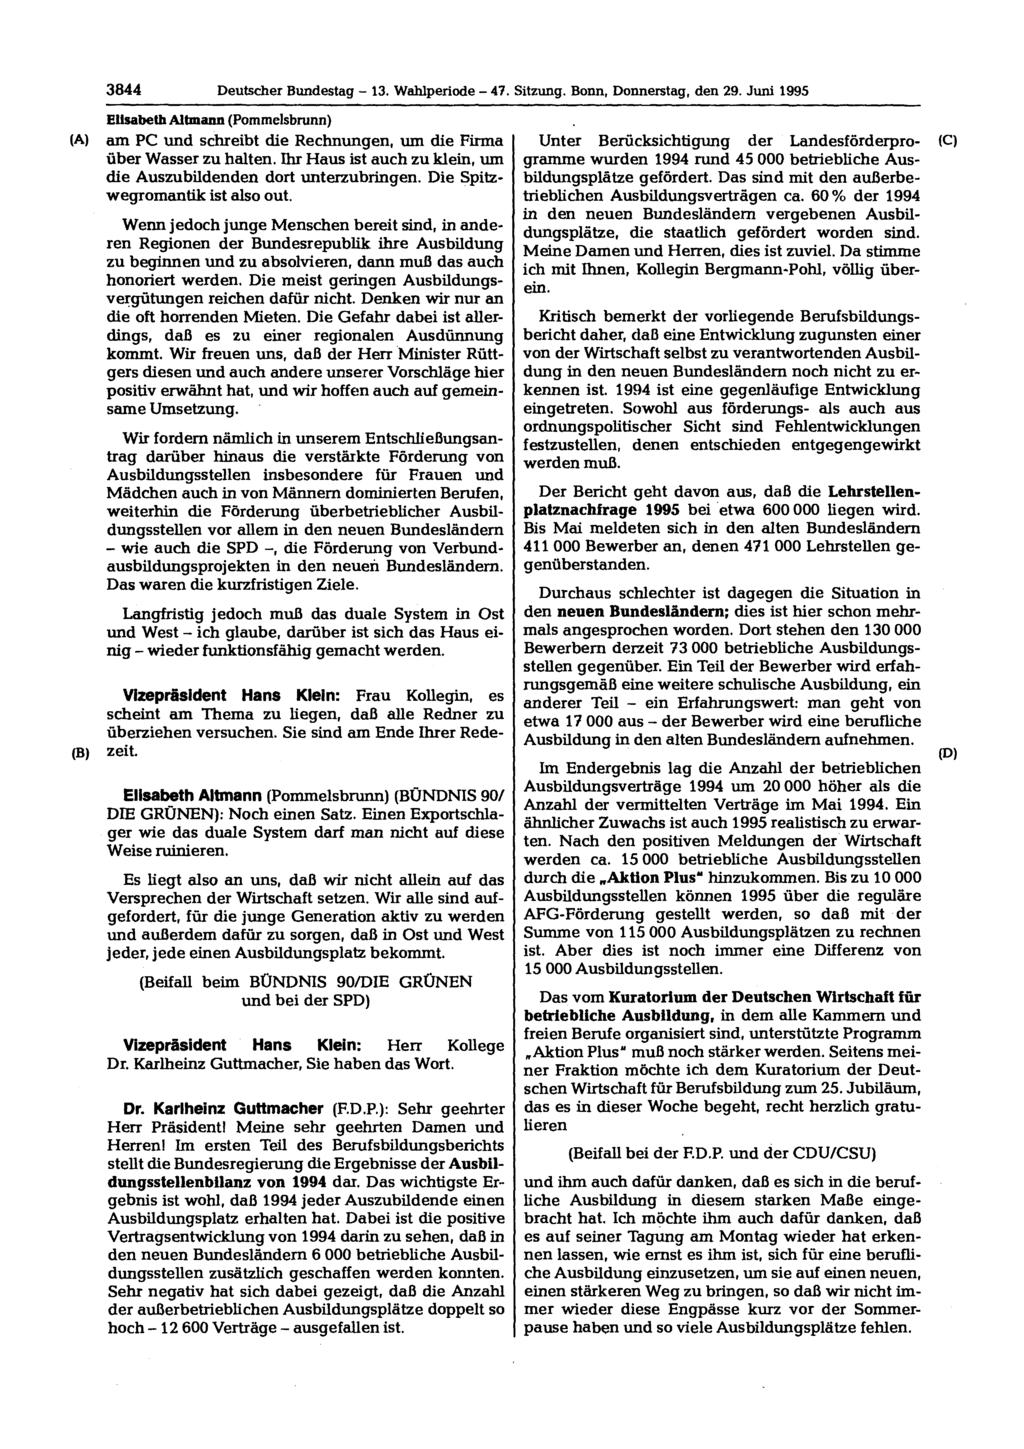 3844 Deutscher Bundestag - 13. Wahlperiode - 47. Sitzung. Bonn, Donnerstag, den 29. Juni 1995 Elisabeth Altmann (Pommelsbrunn) am PC und schreibt die Rechnungen, um die Firma über Wasser zu halten.